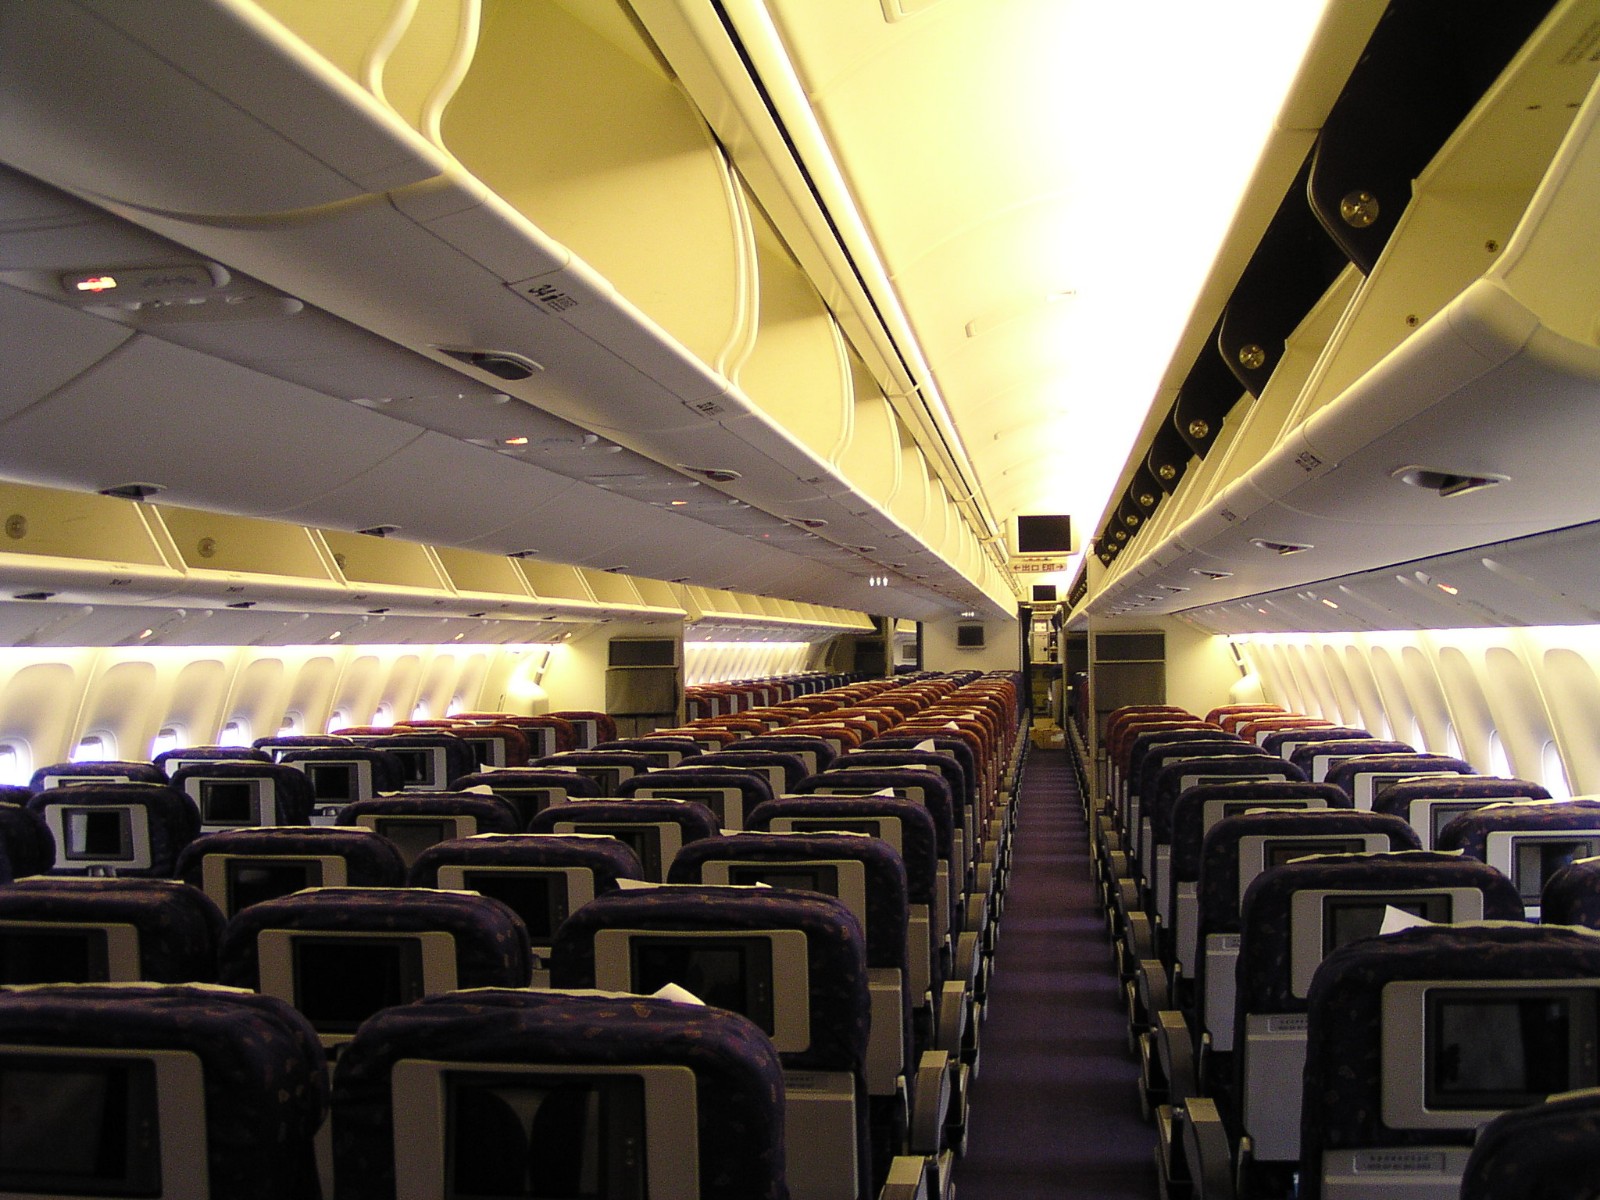 波音737-400内部图片